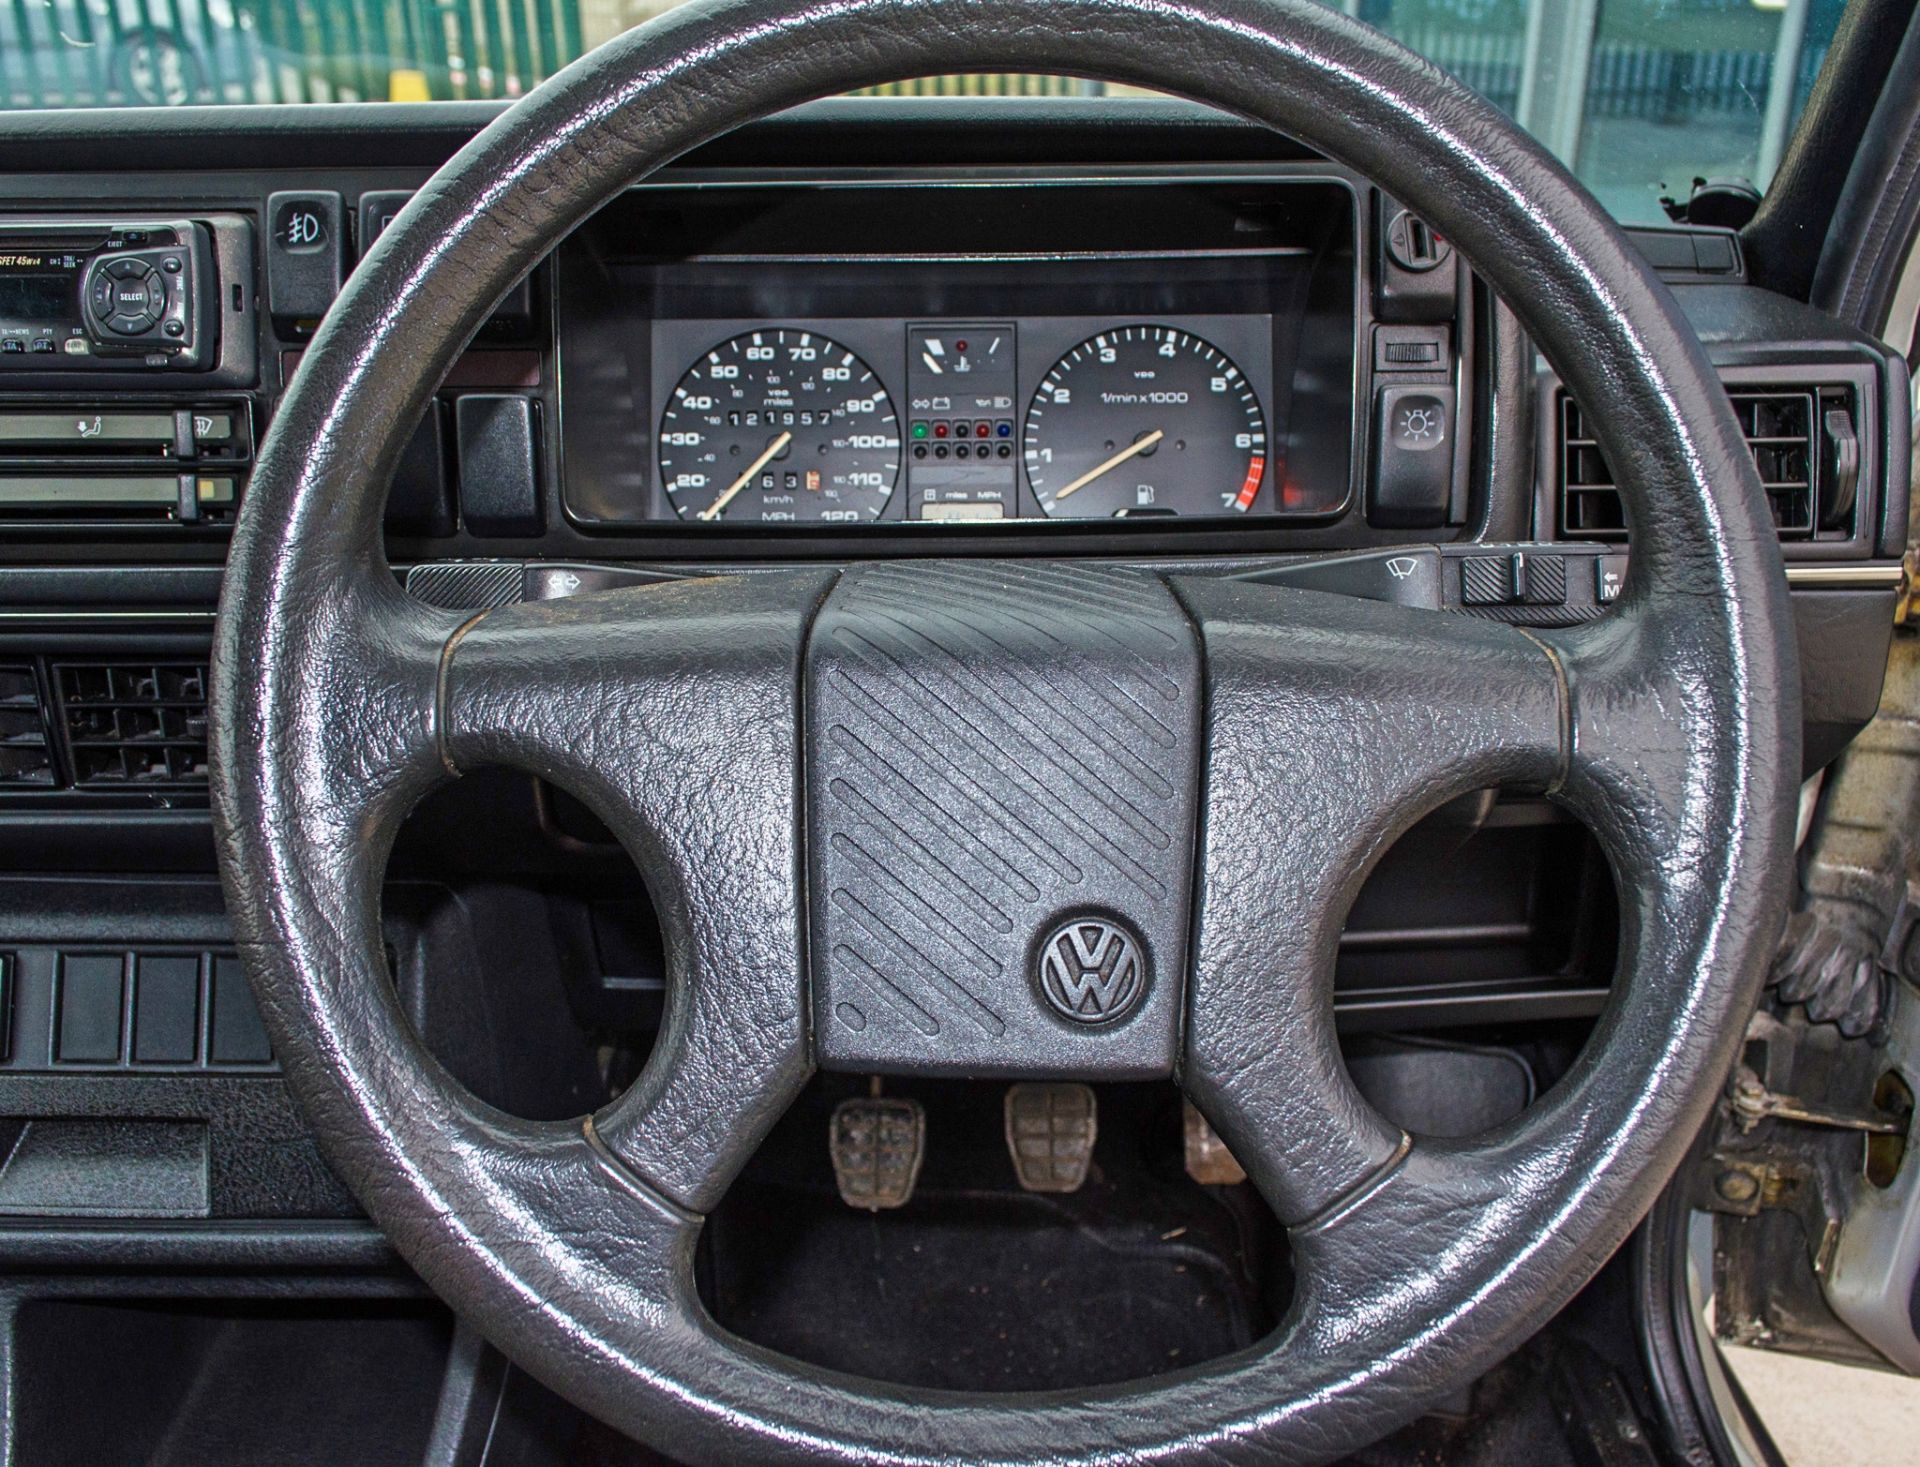 1989 Volkswagen Golf GTI 1.8 litre 3 door hatchback - Image 39 of 52